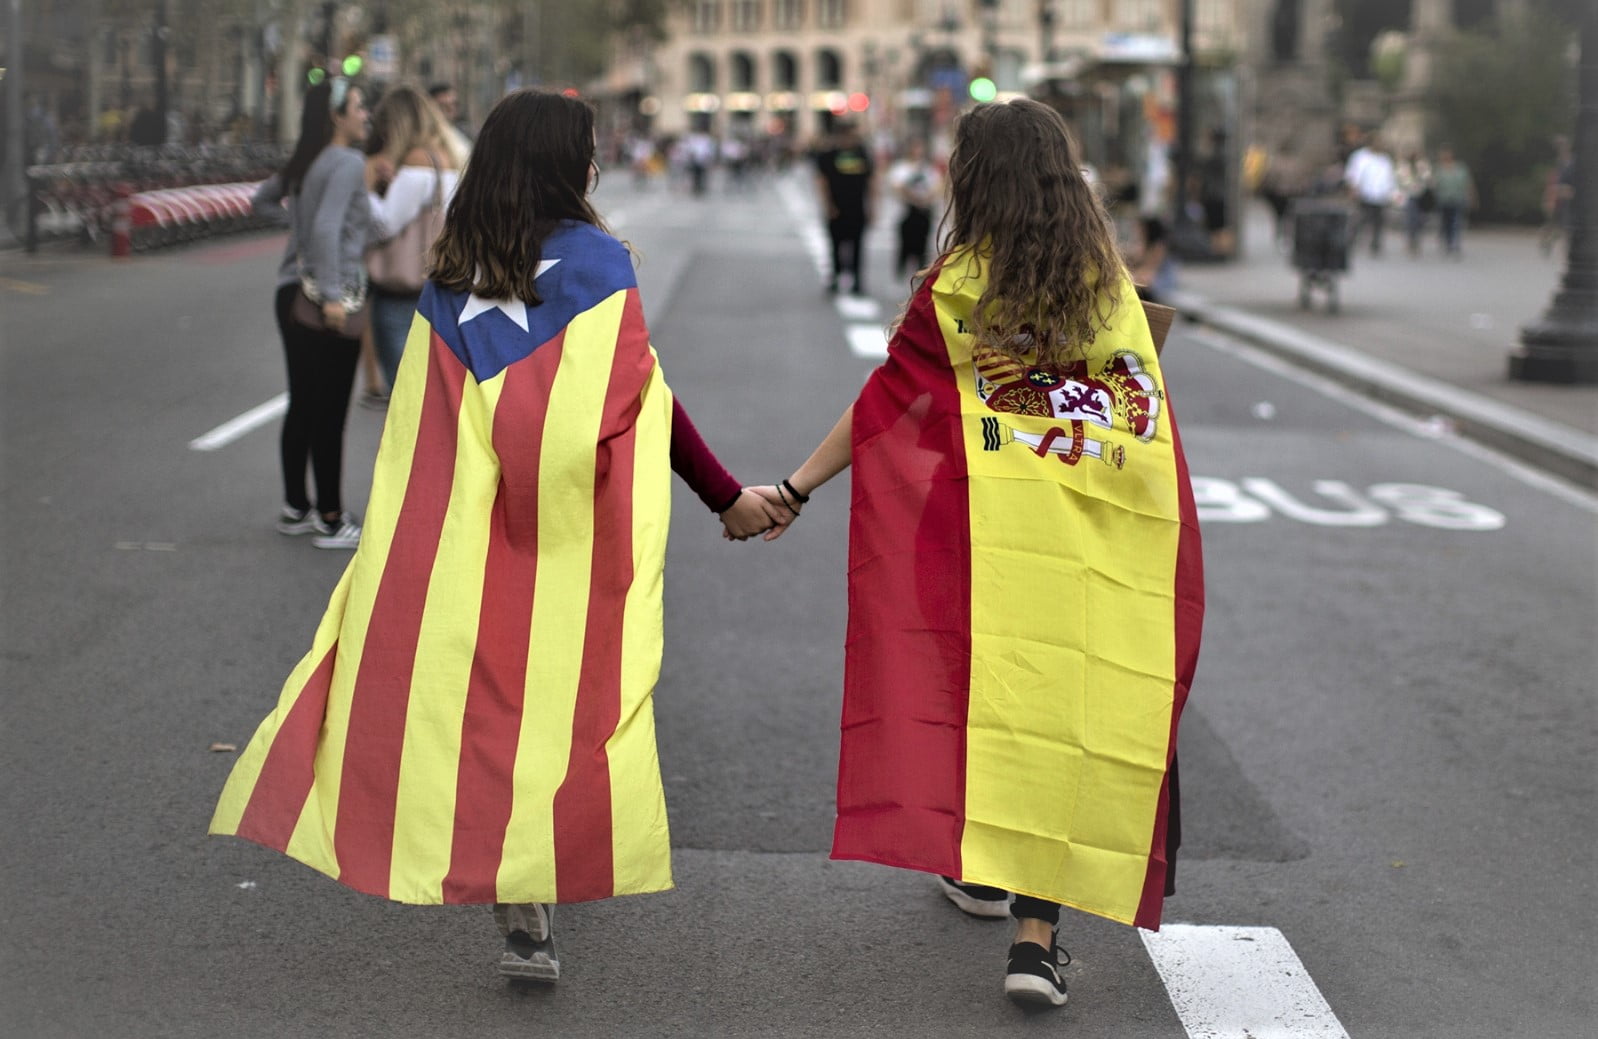 Cataluña y España